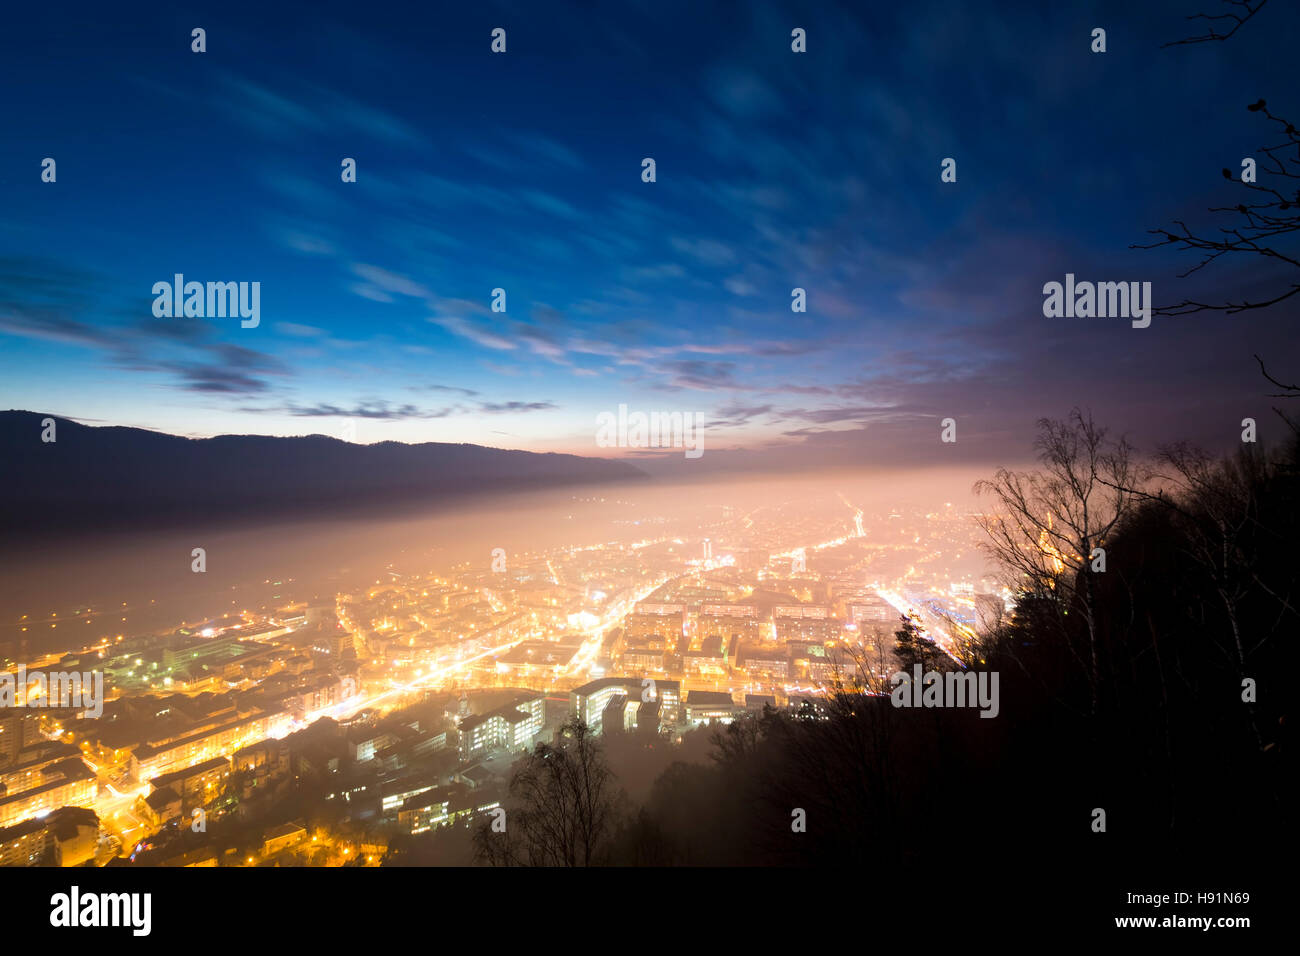 Piatra Neamt city at night Stock Photo